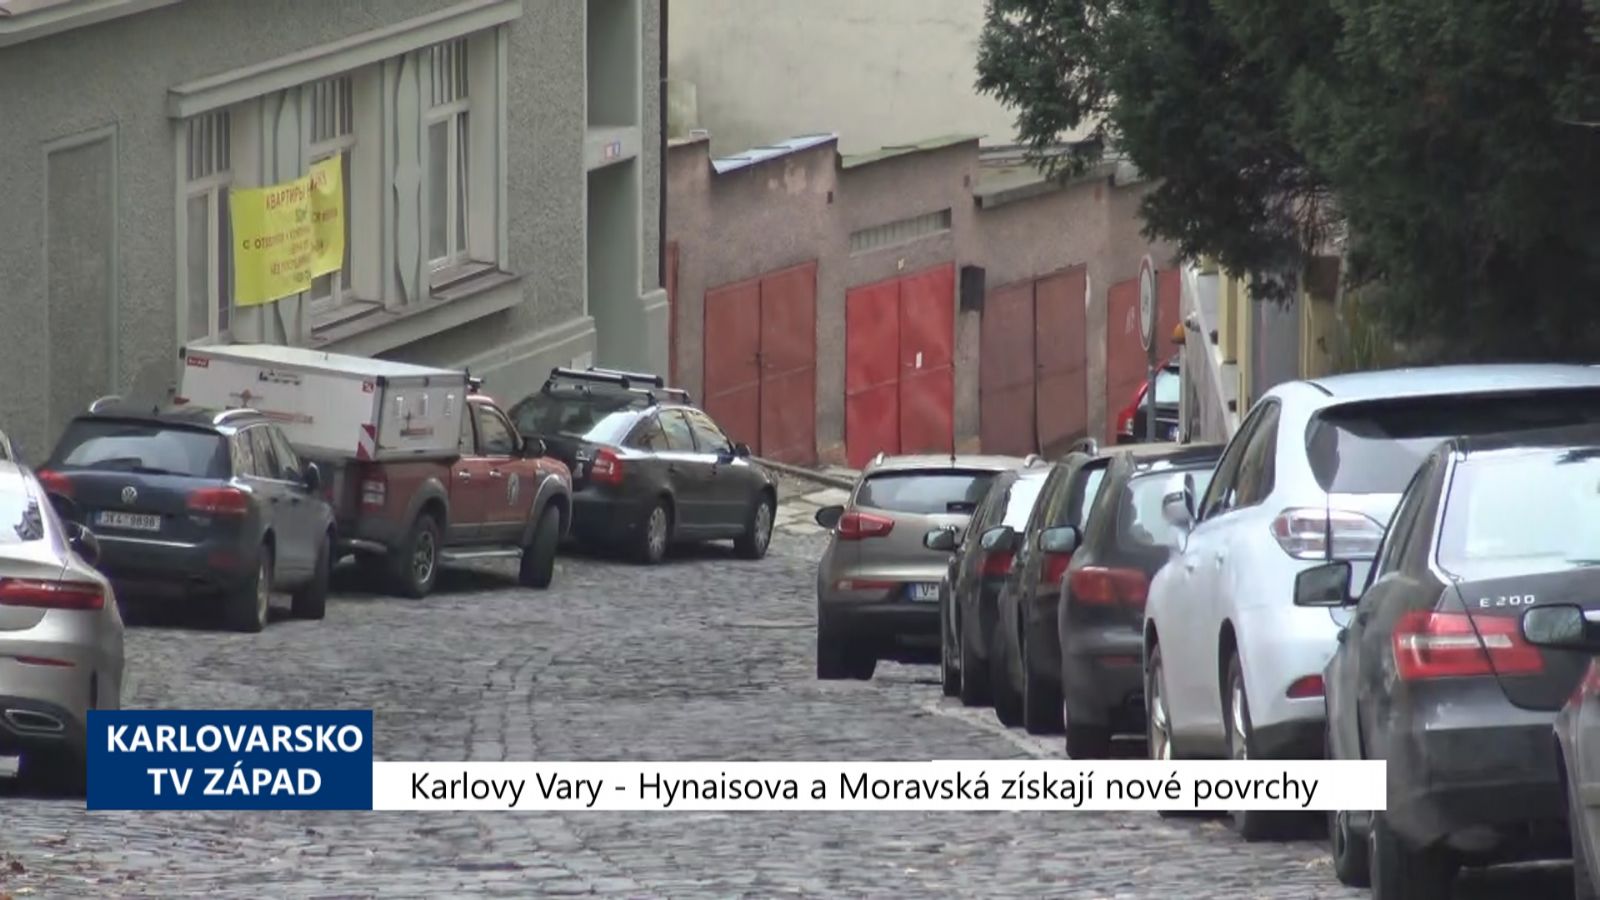 Karlovy Vary: Hynaisova a Moravská získají nové povrchy (TV Západ)